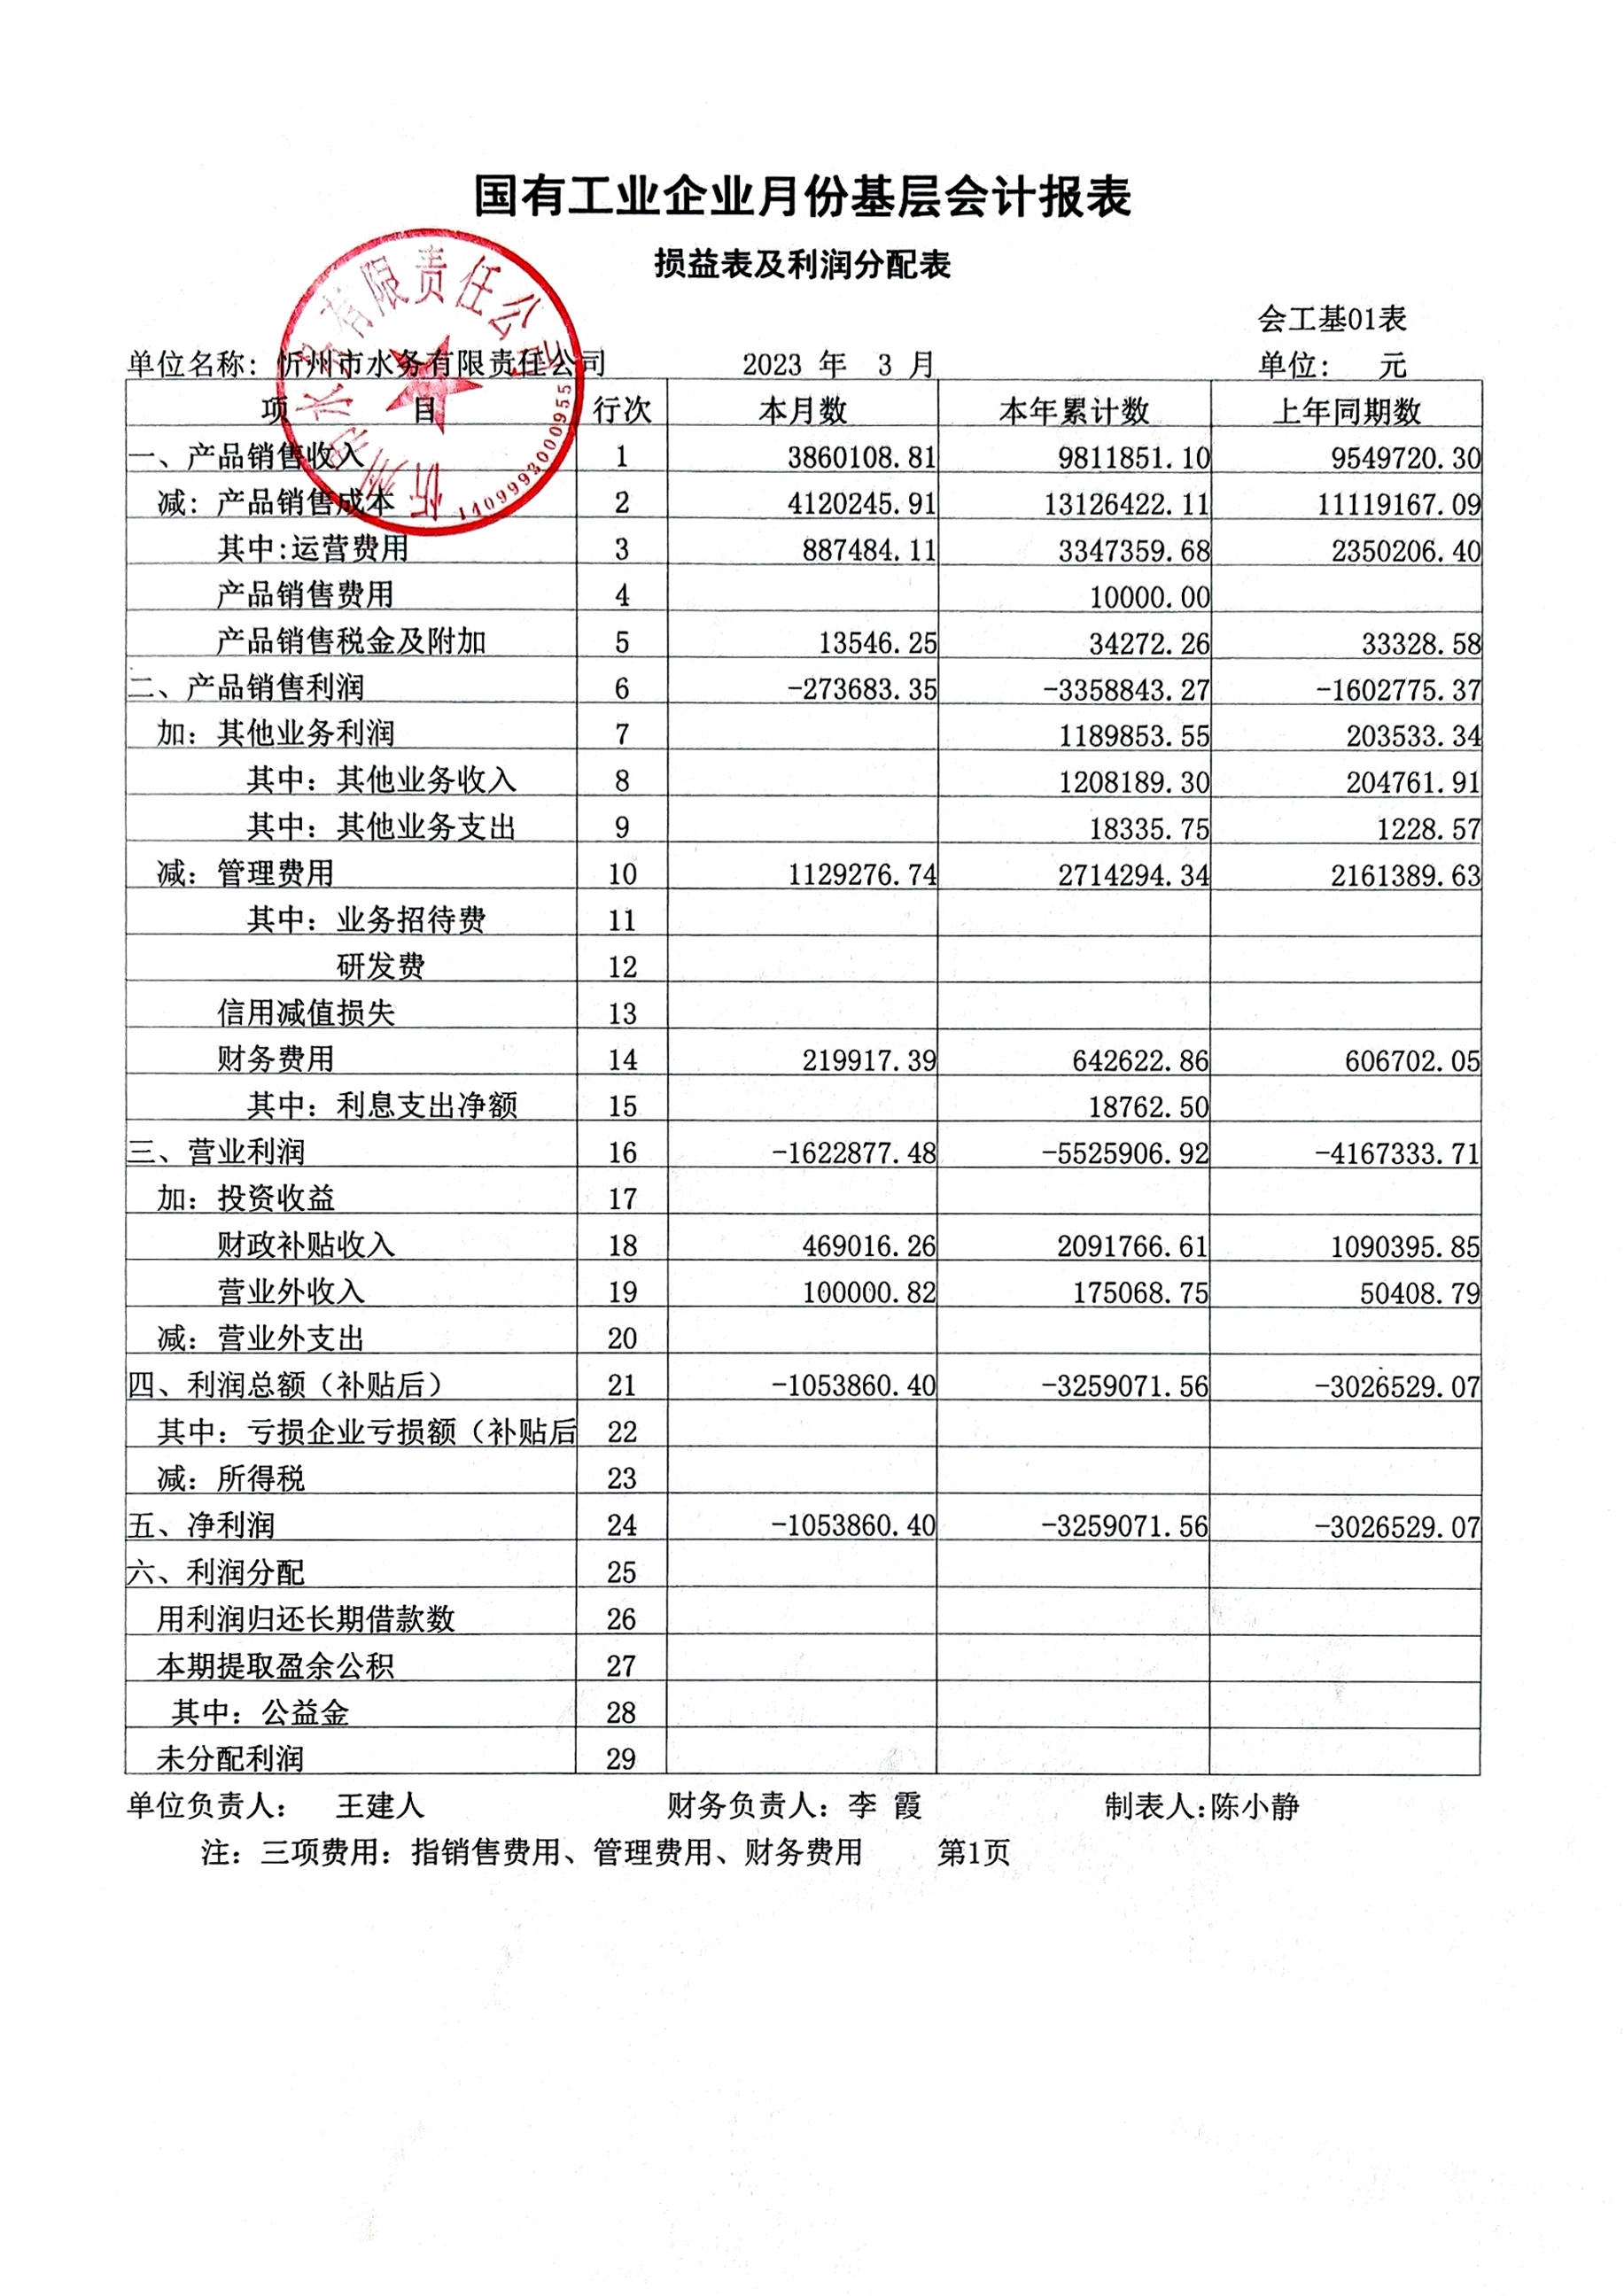 忻州水務2023年第一季度財務報表公示.jpg